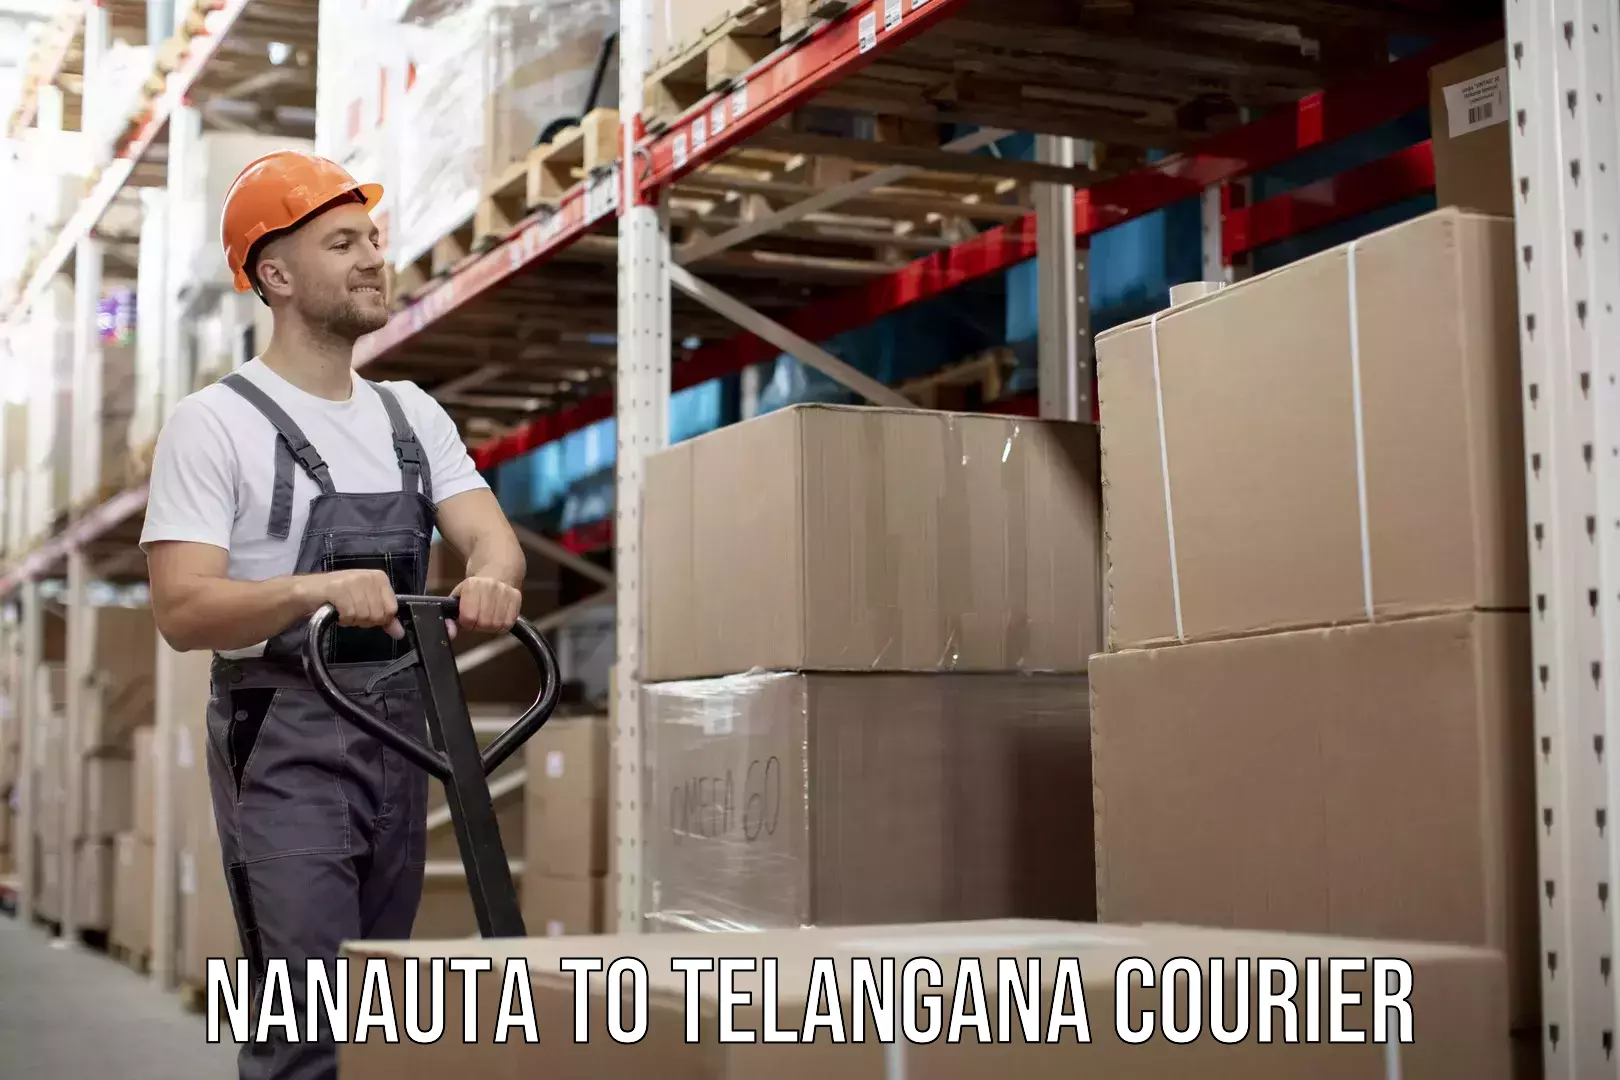 Expert moving and storage Nanauta to Telangana